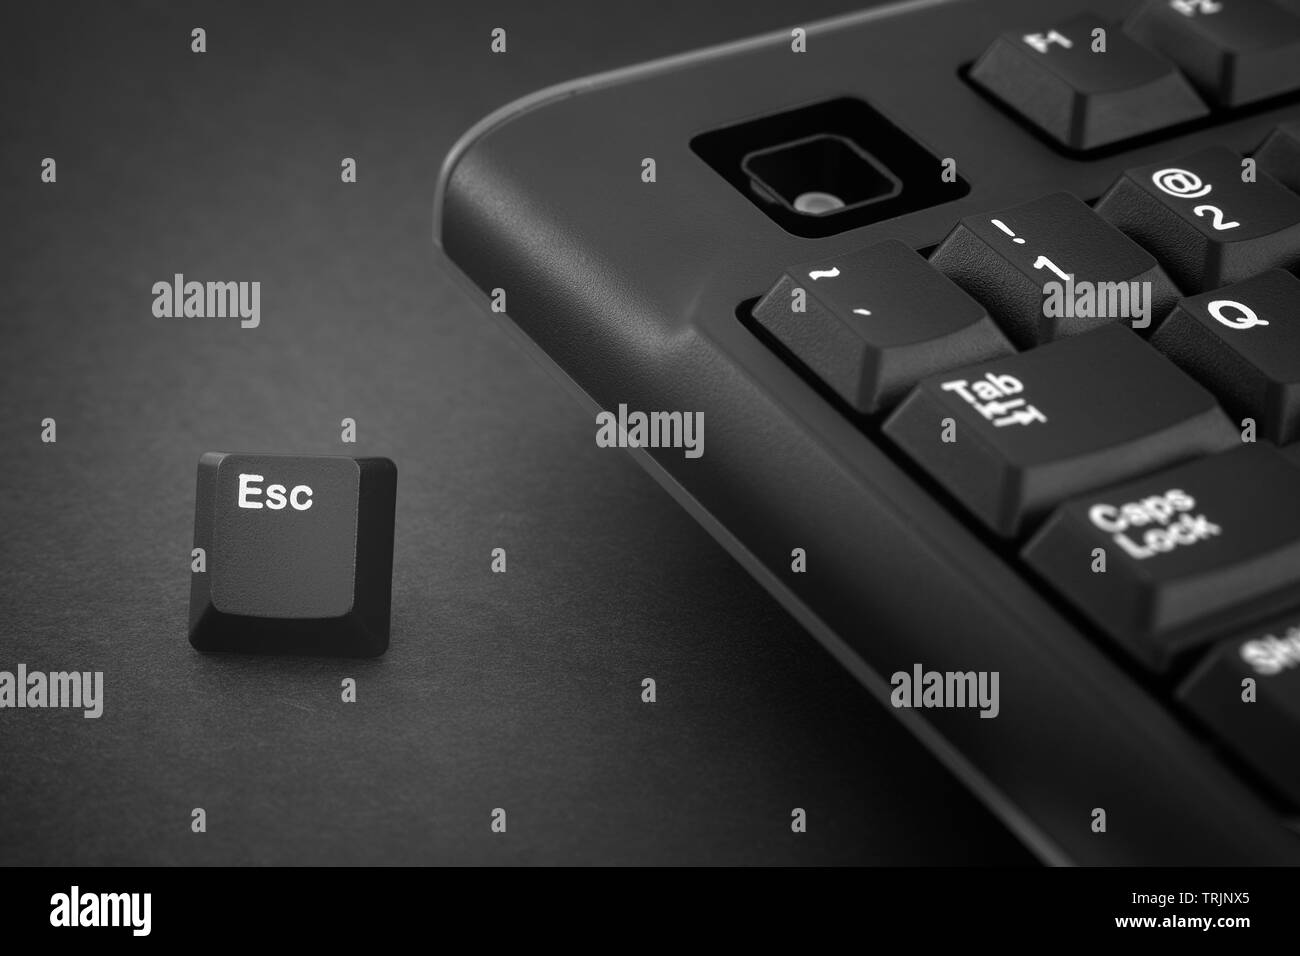 Tasto Esc fuoriesce da un nero della tastiera del computer. Immagine in bianco e nero. Close up. Foto Stock